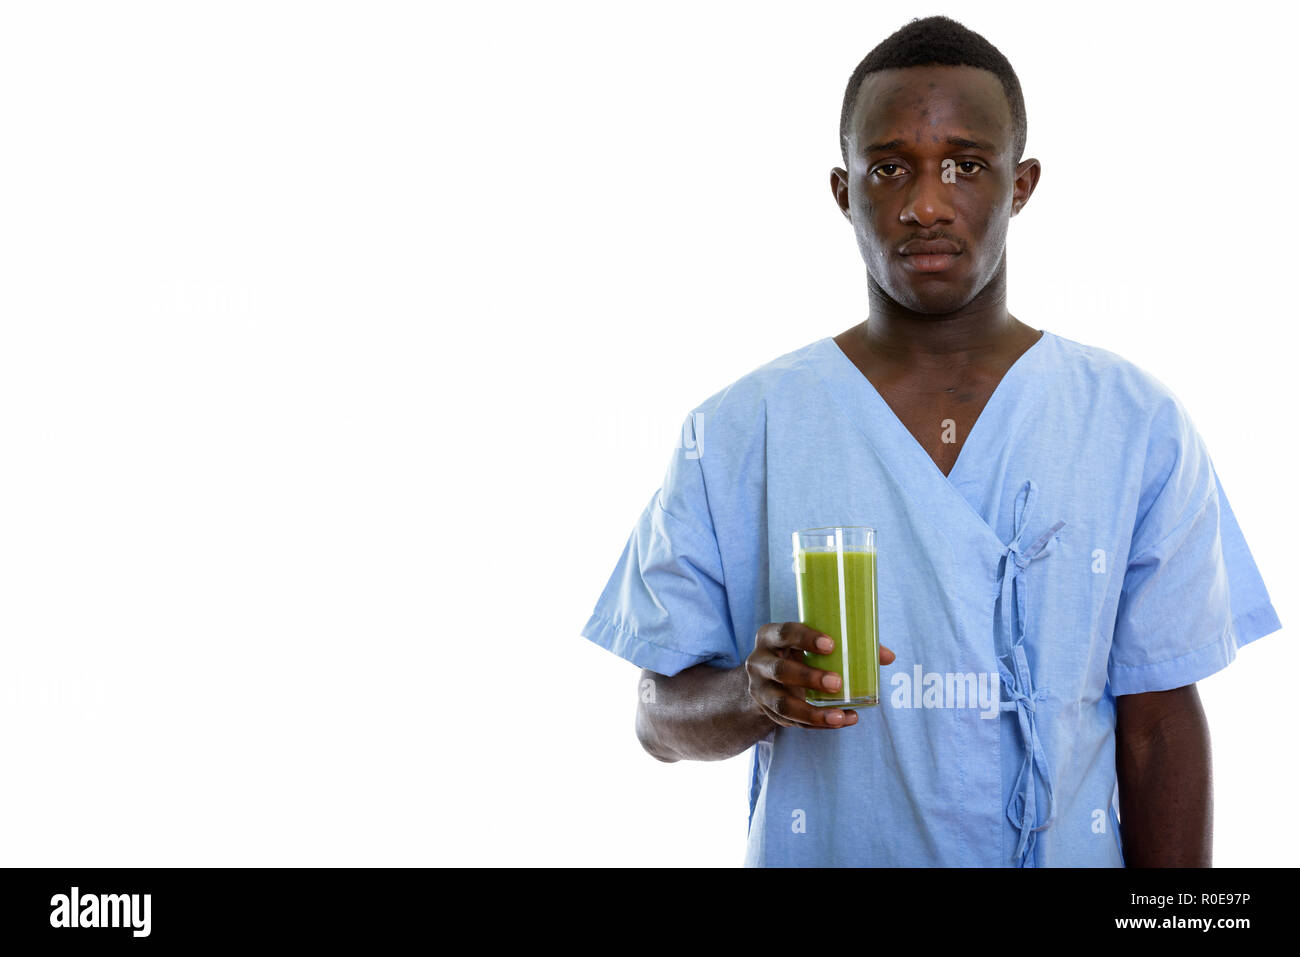 Foto de estudio de la joven paciente hombre negro africano la celebración de vidrio Foto de stock